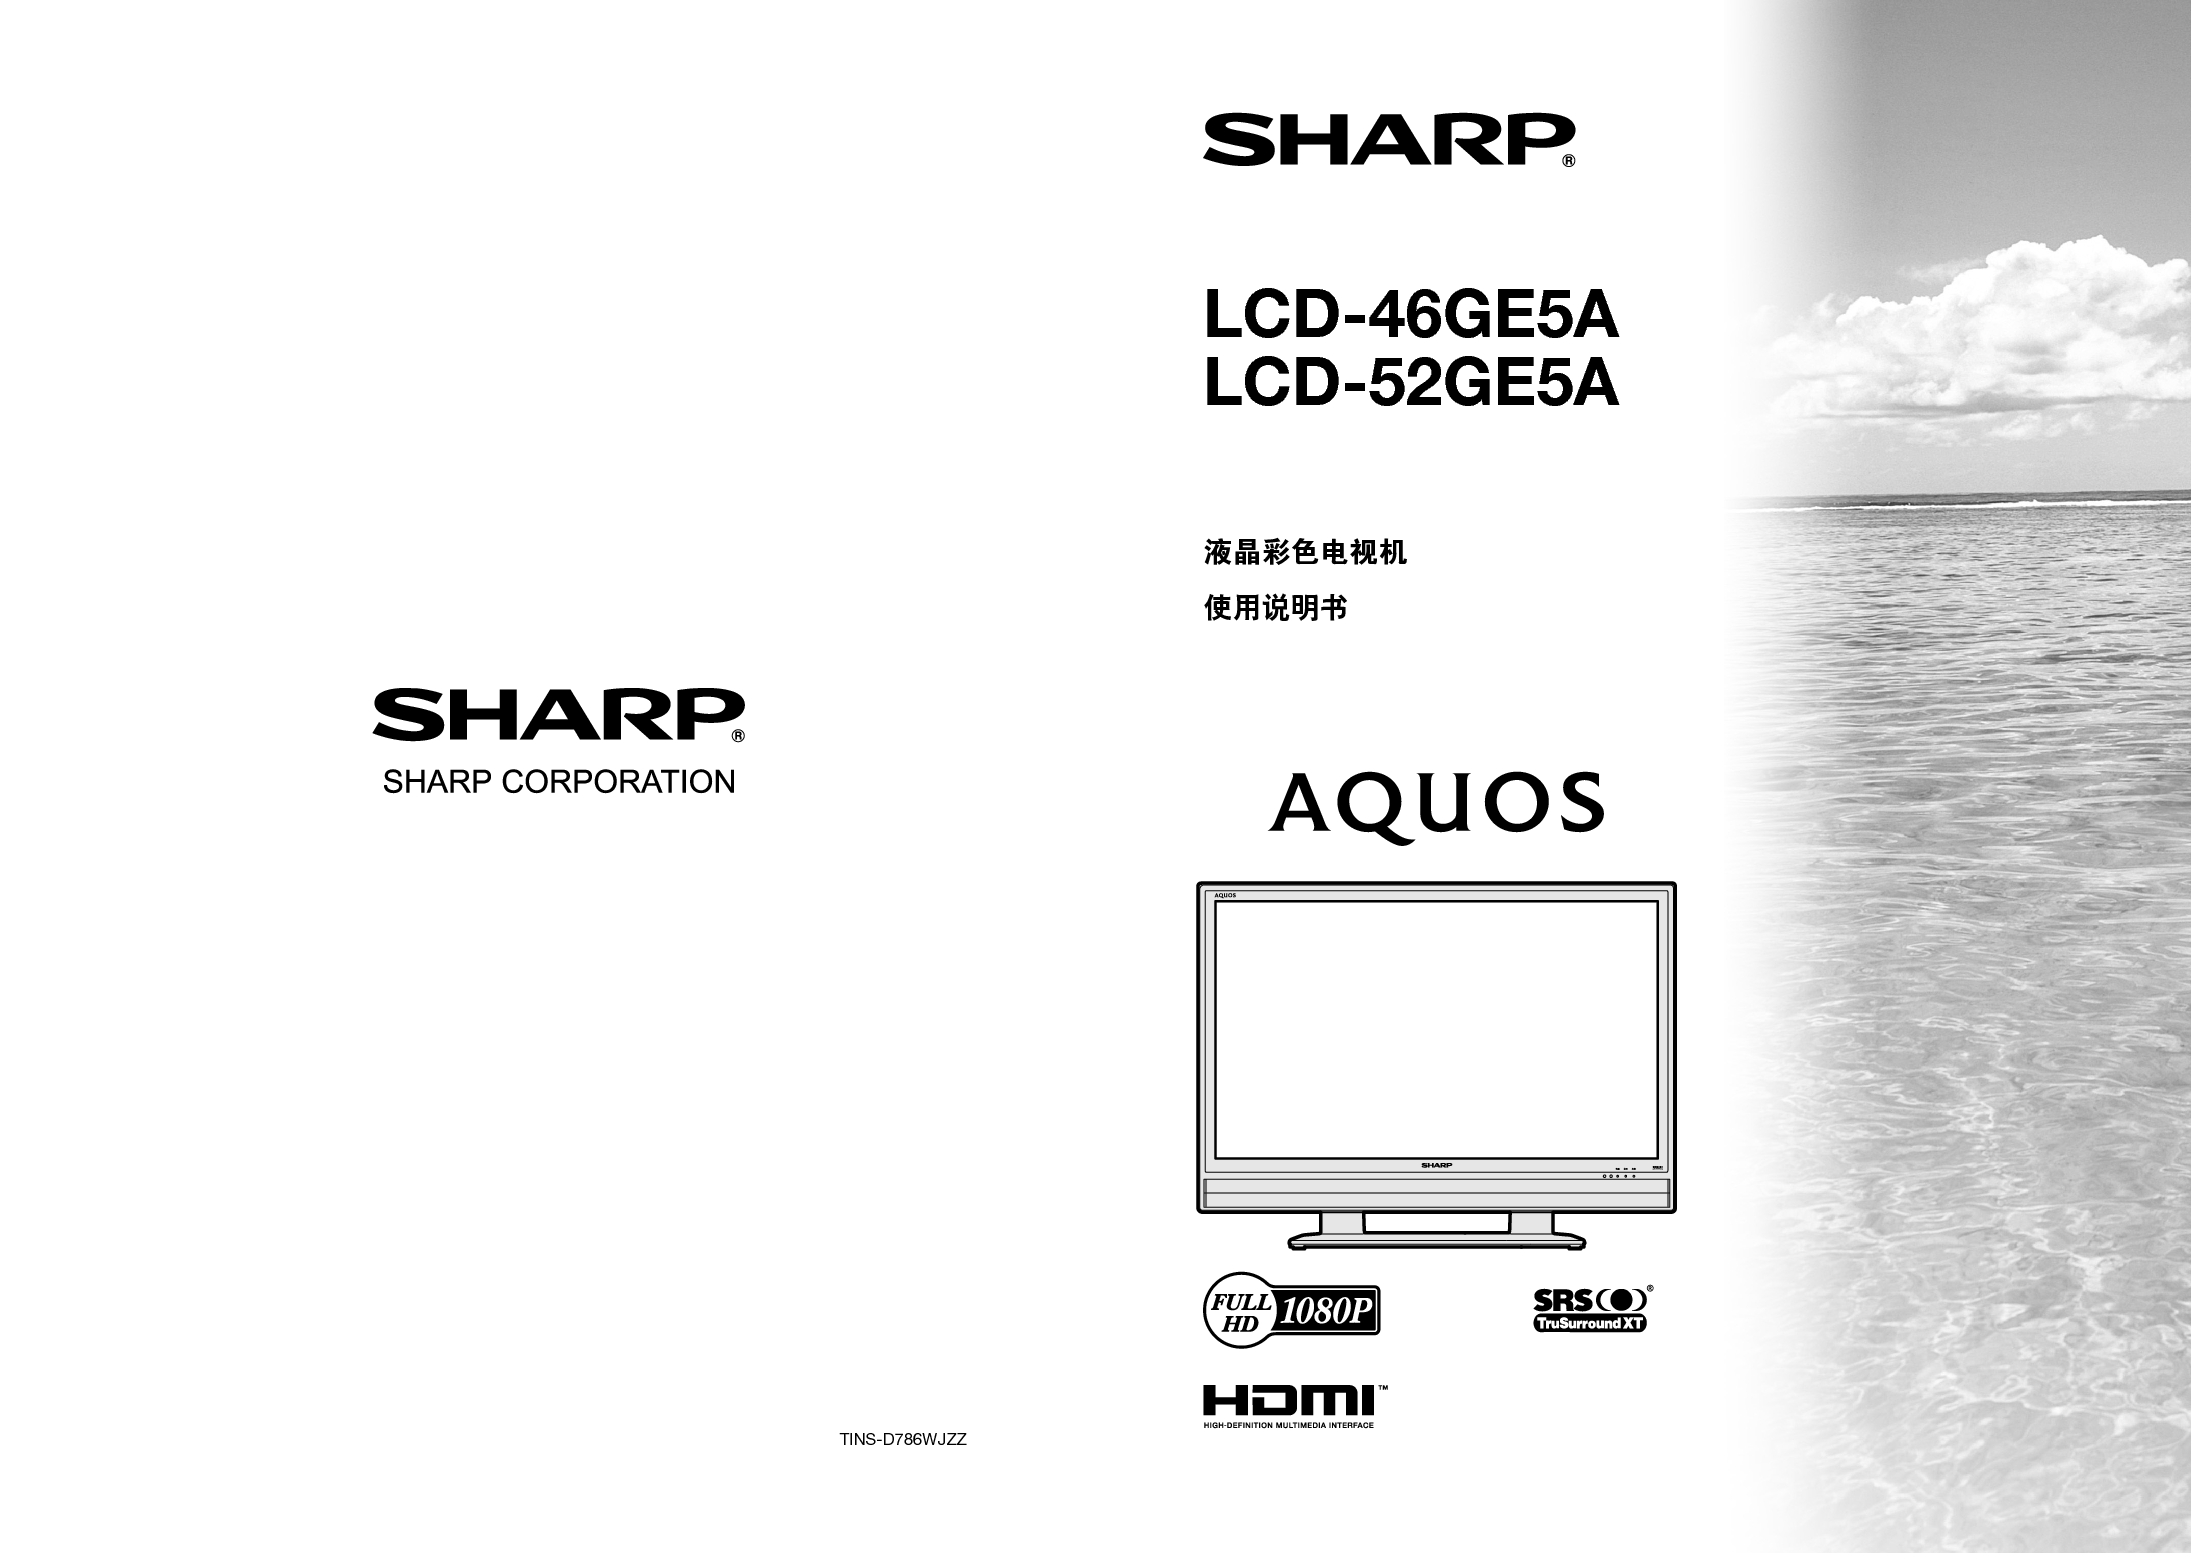 夏普 Sharp LCD-46GE5A 说明书 封面